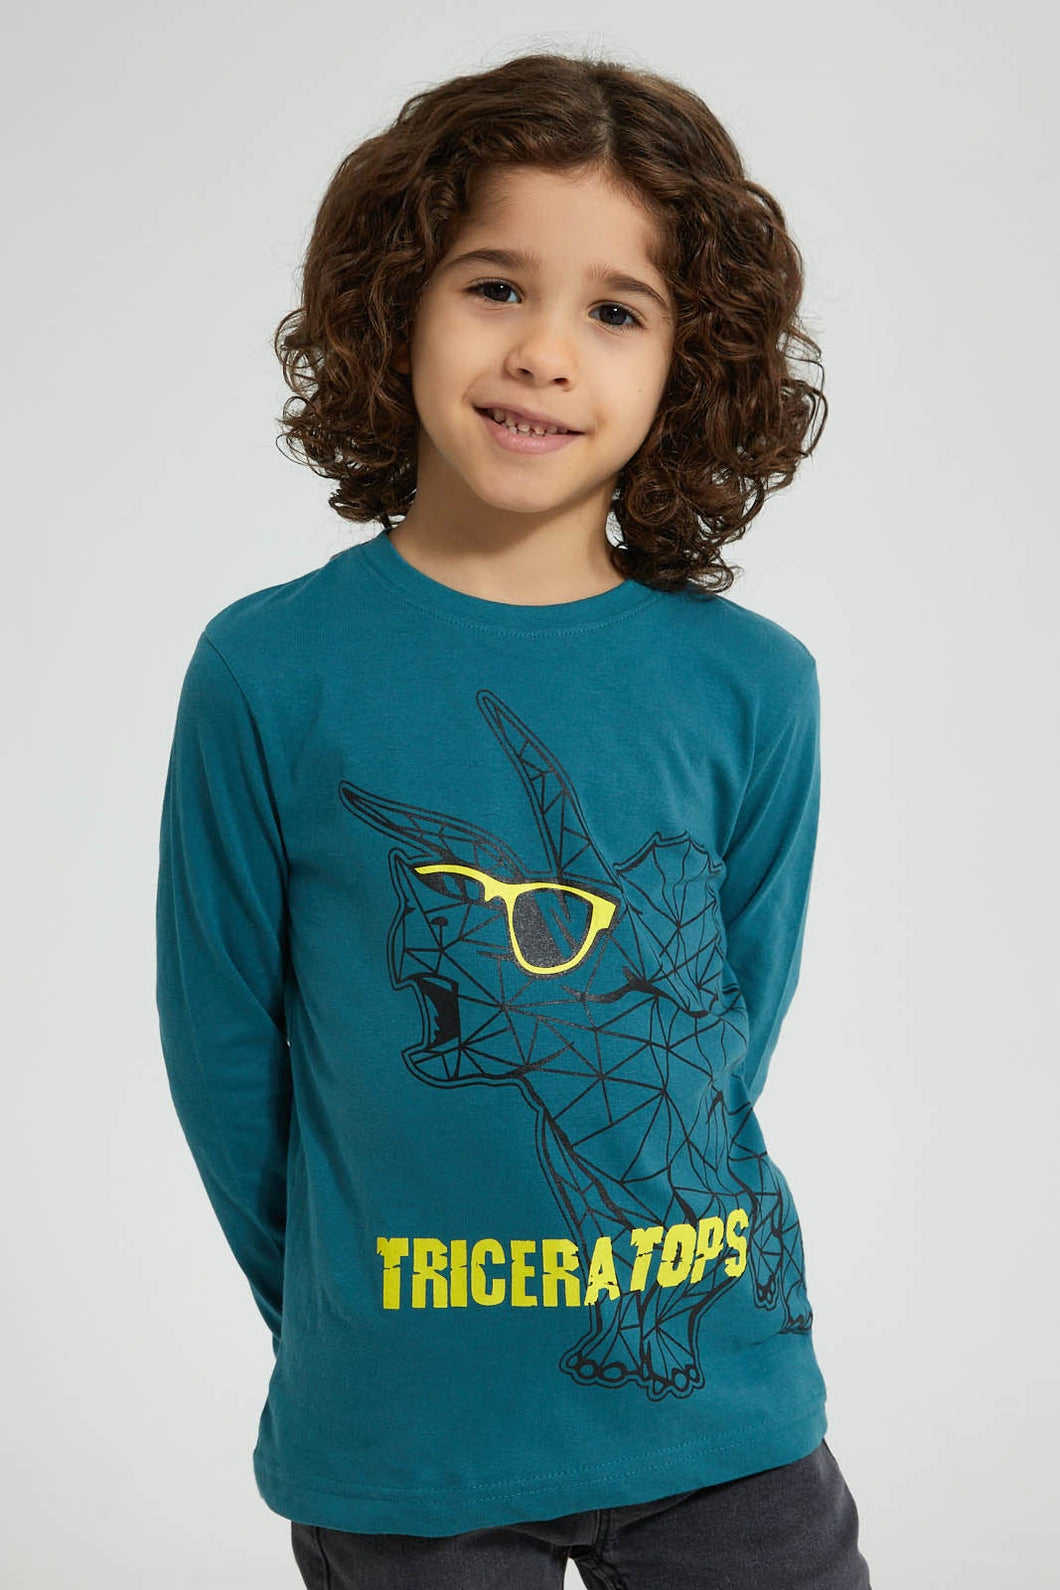 Teal Triceratops Long Sleeved T-shirt تيشيرت باللون الأزرق الداكن بطبعة ديناصور